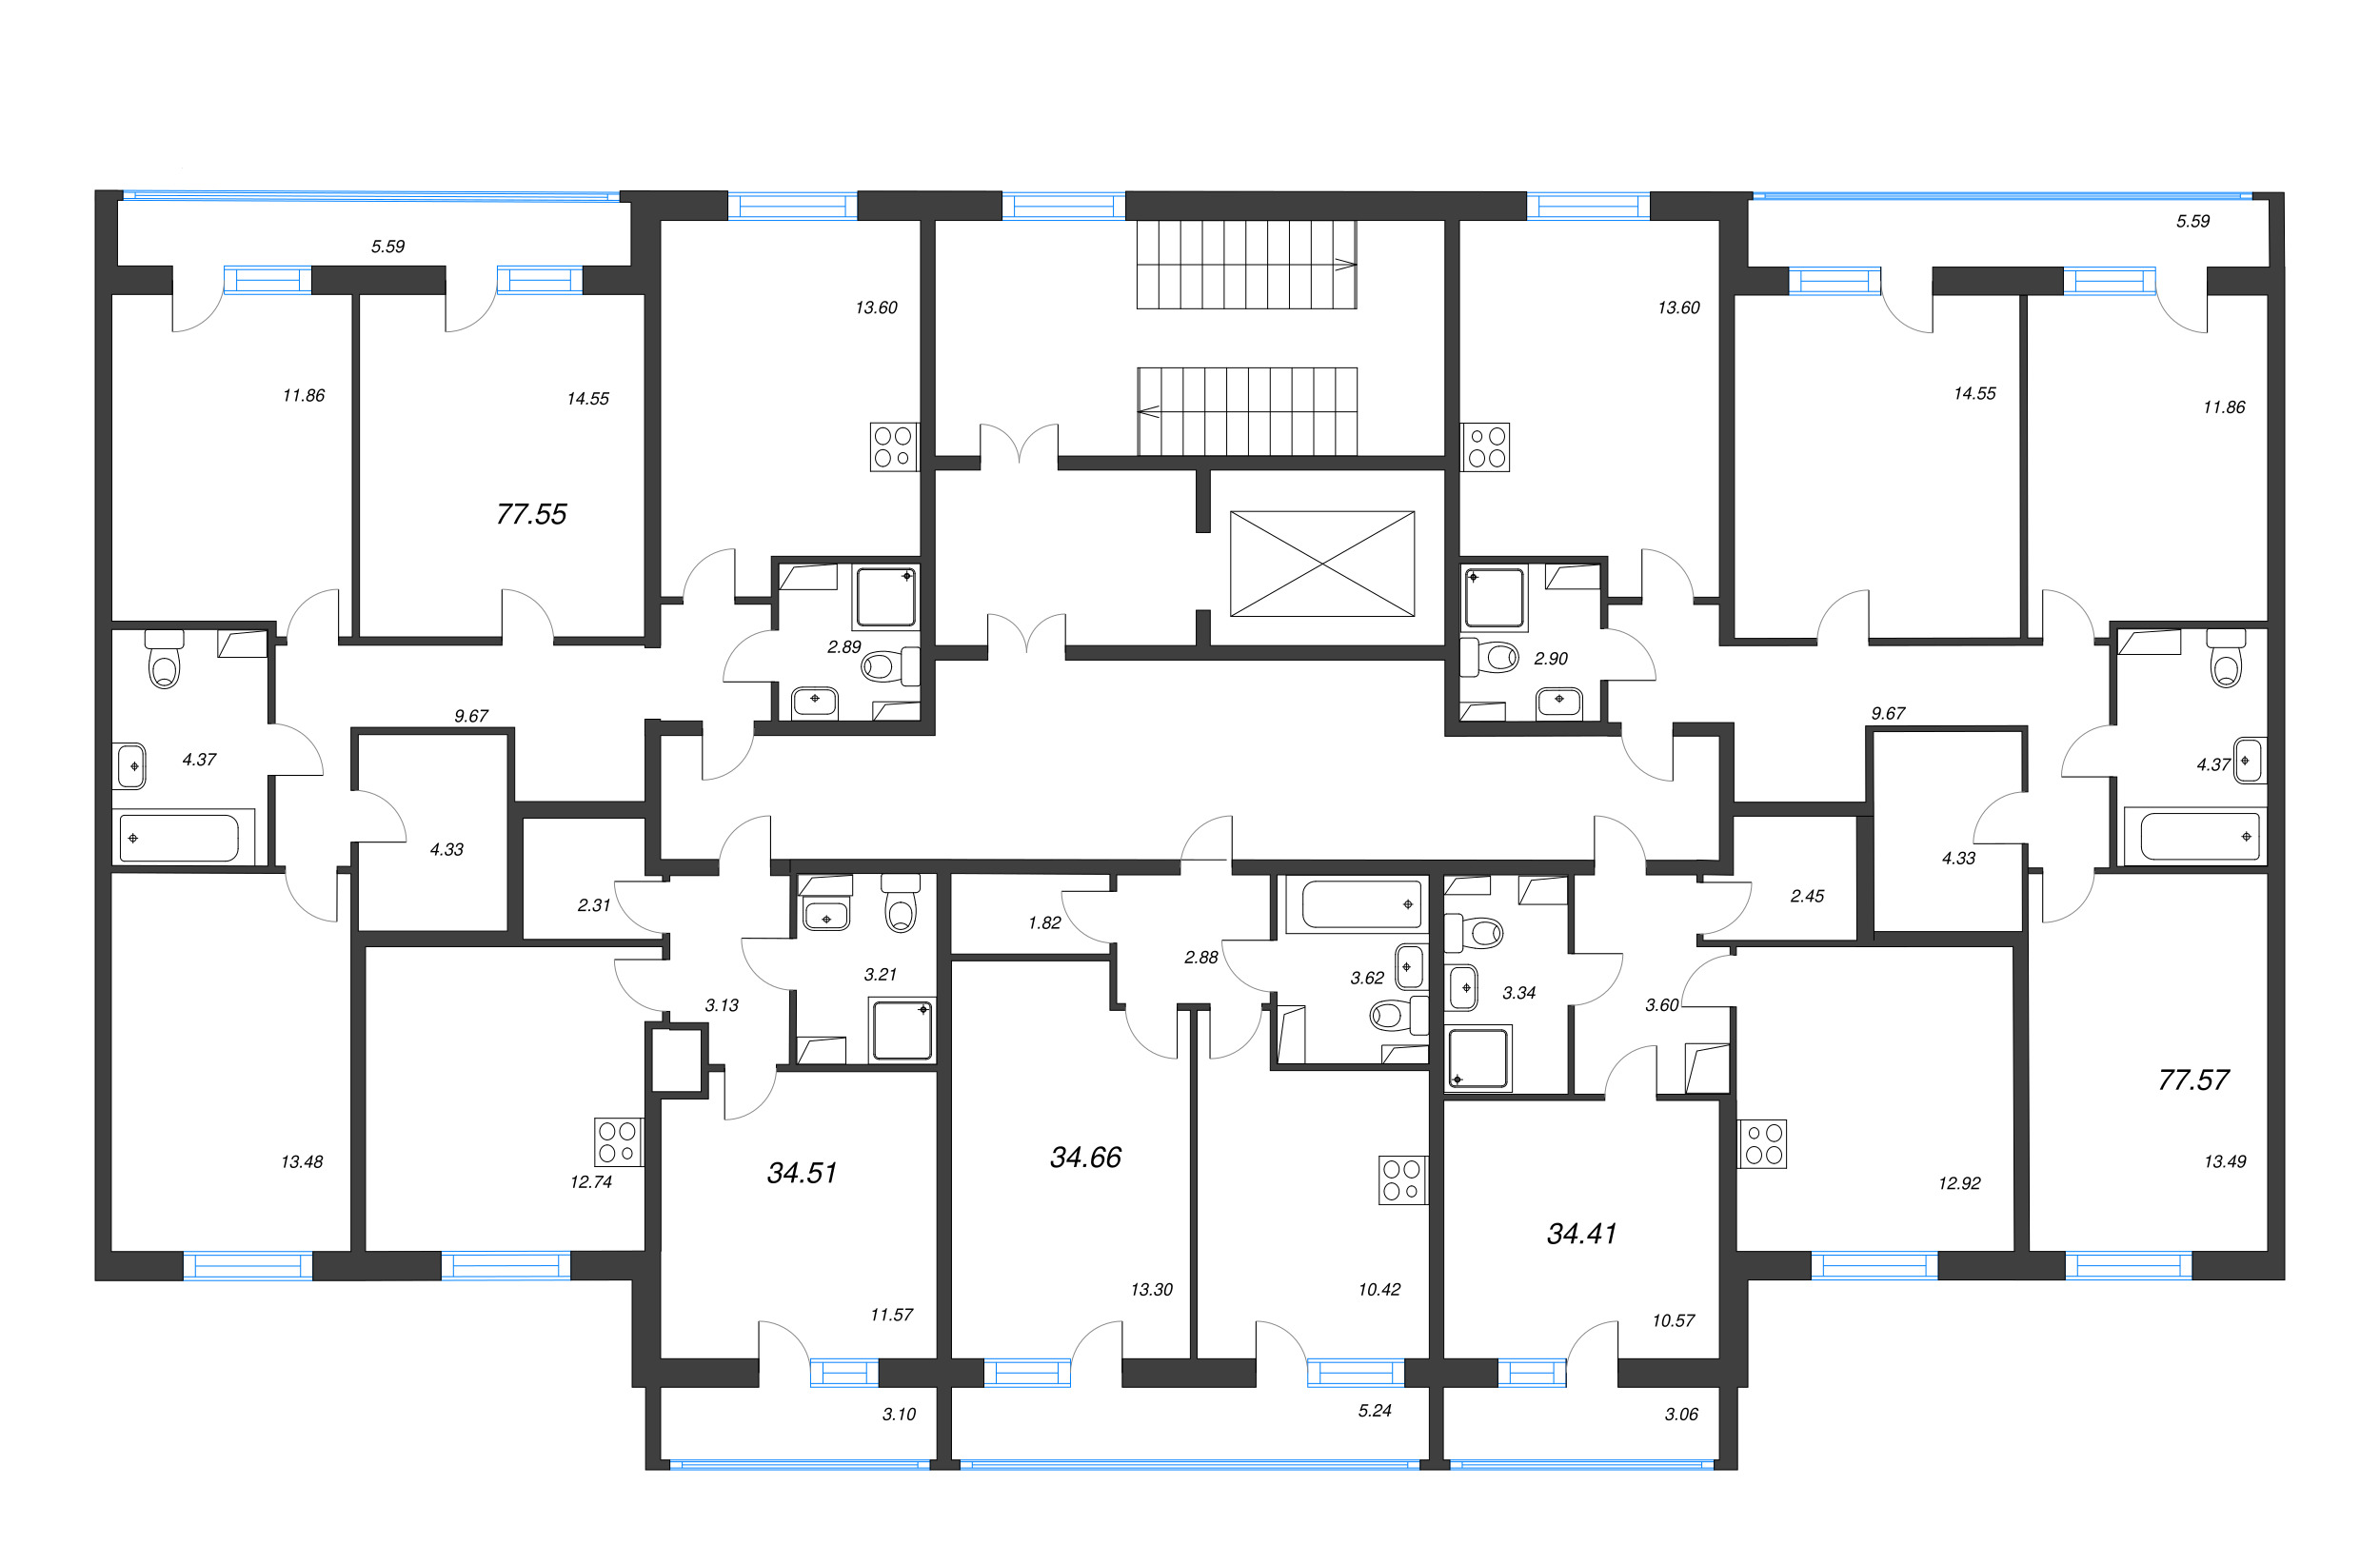 3-комнатная квартира, 77.57 м² в ЖК "Кинопарк" - планировка этажа